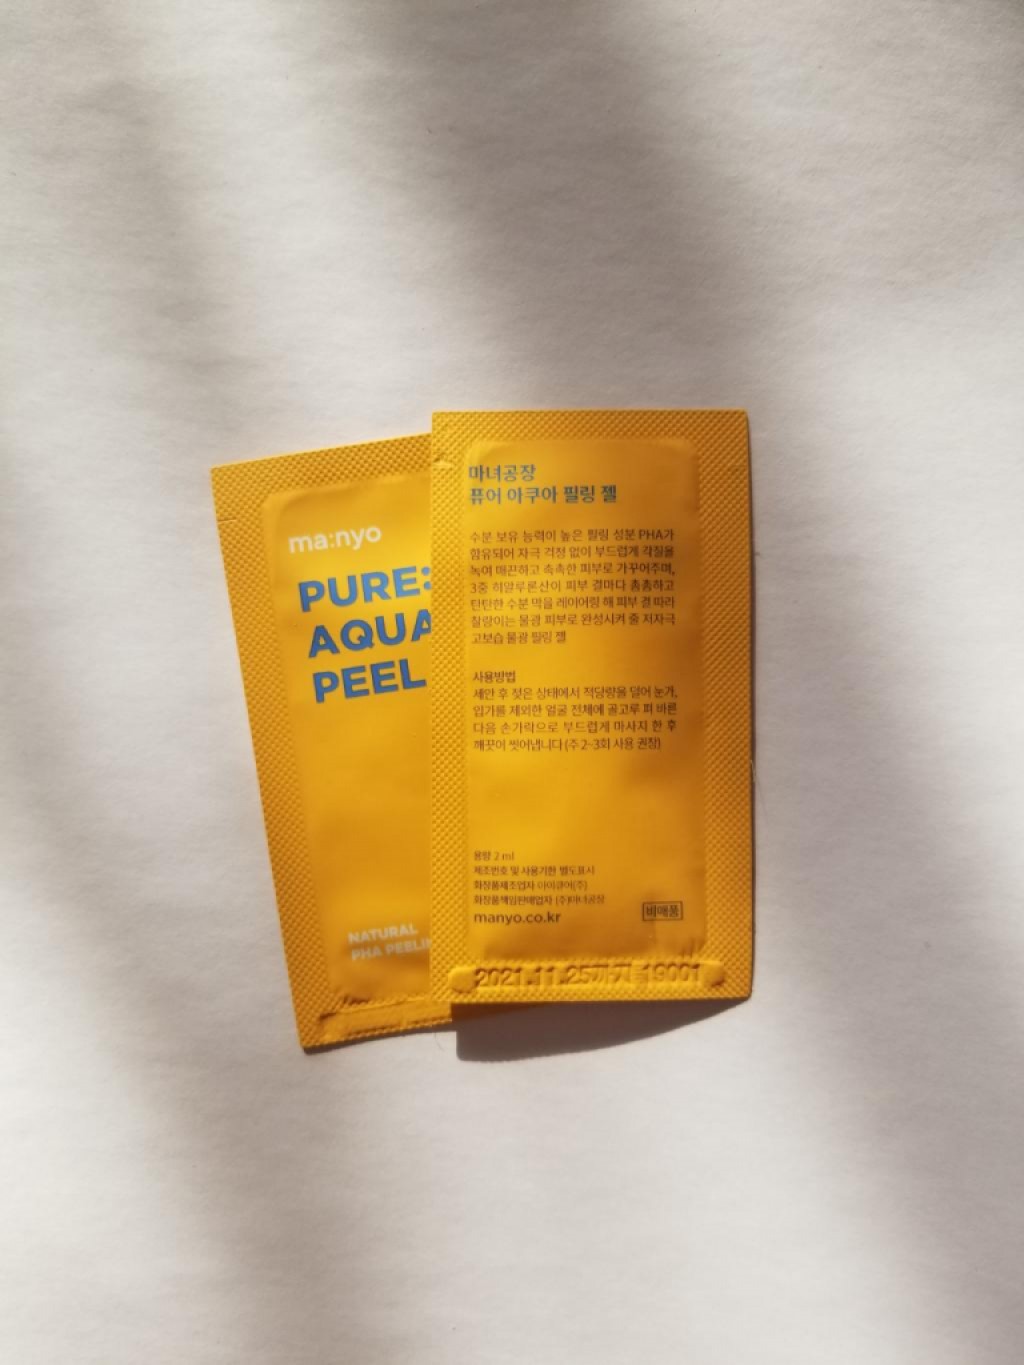 Manyo Factory Pure Aqua Peel Пилинг-скатка с PHA-кислотой для сияния кожи 